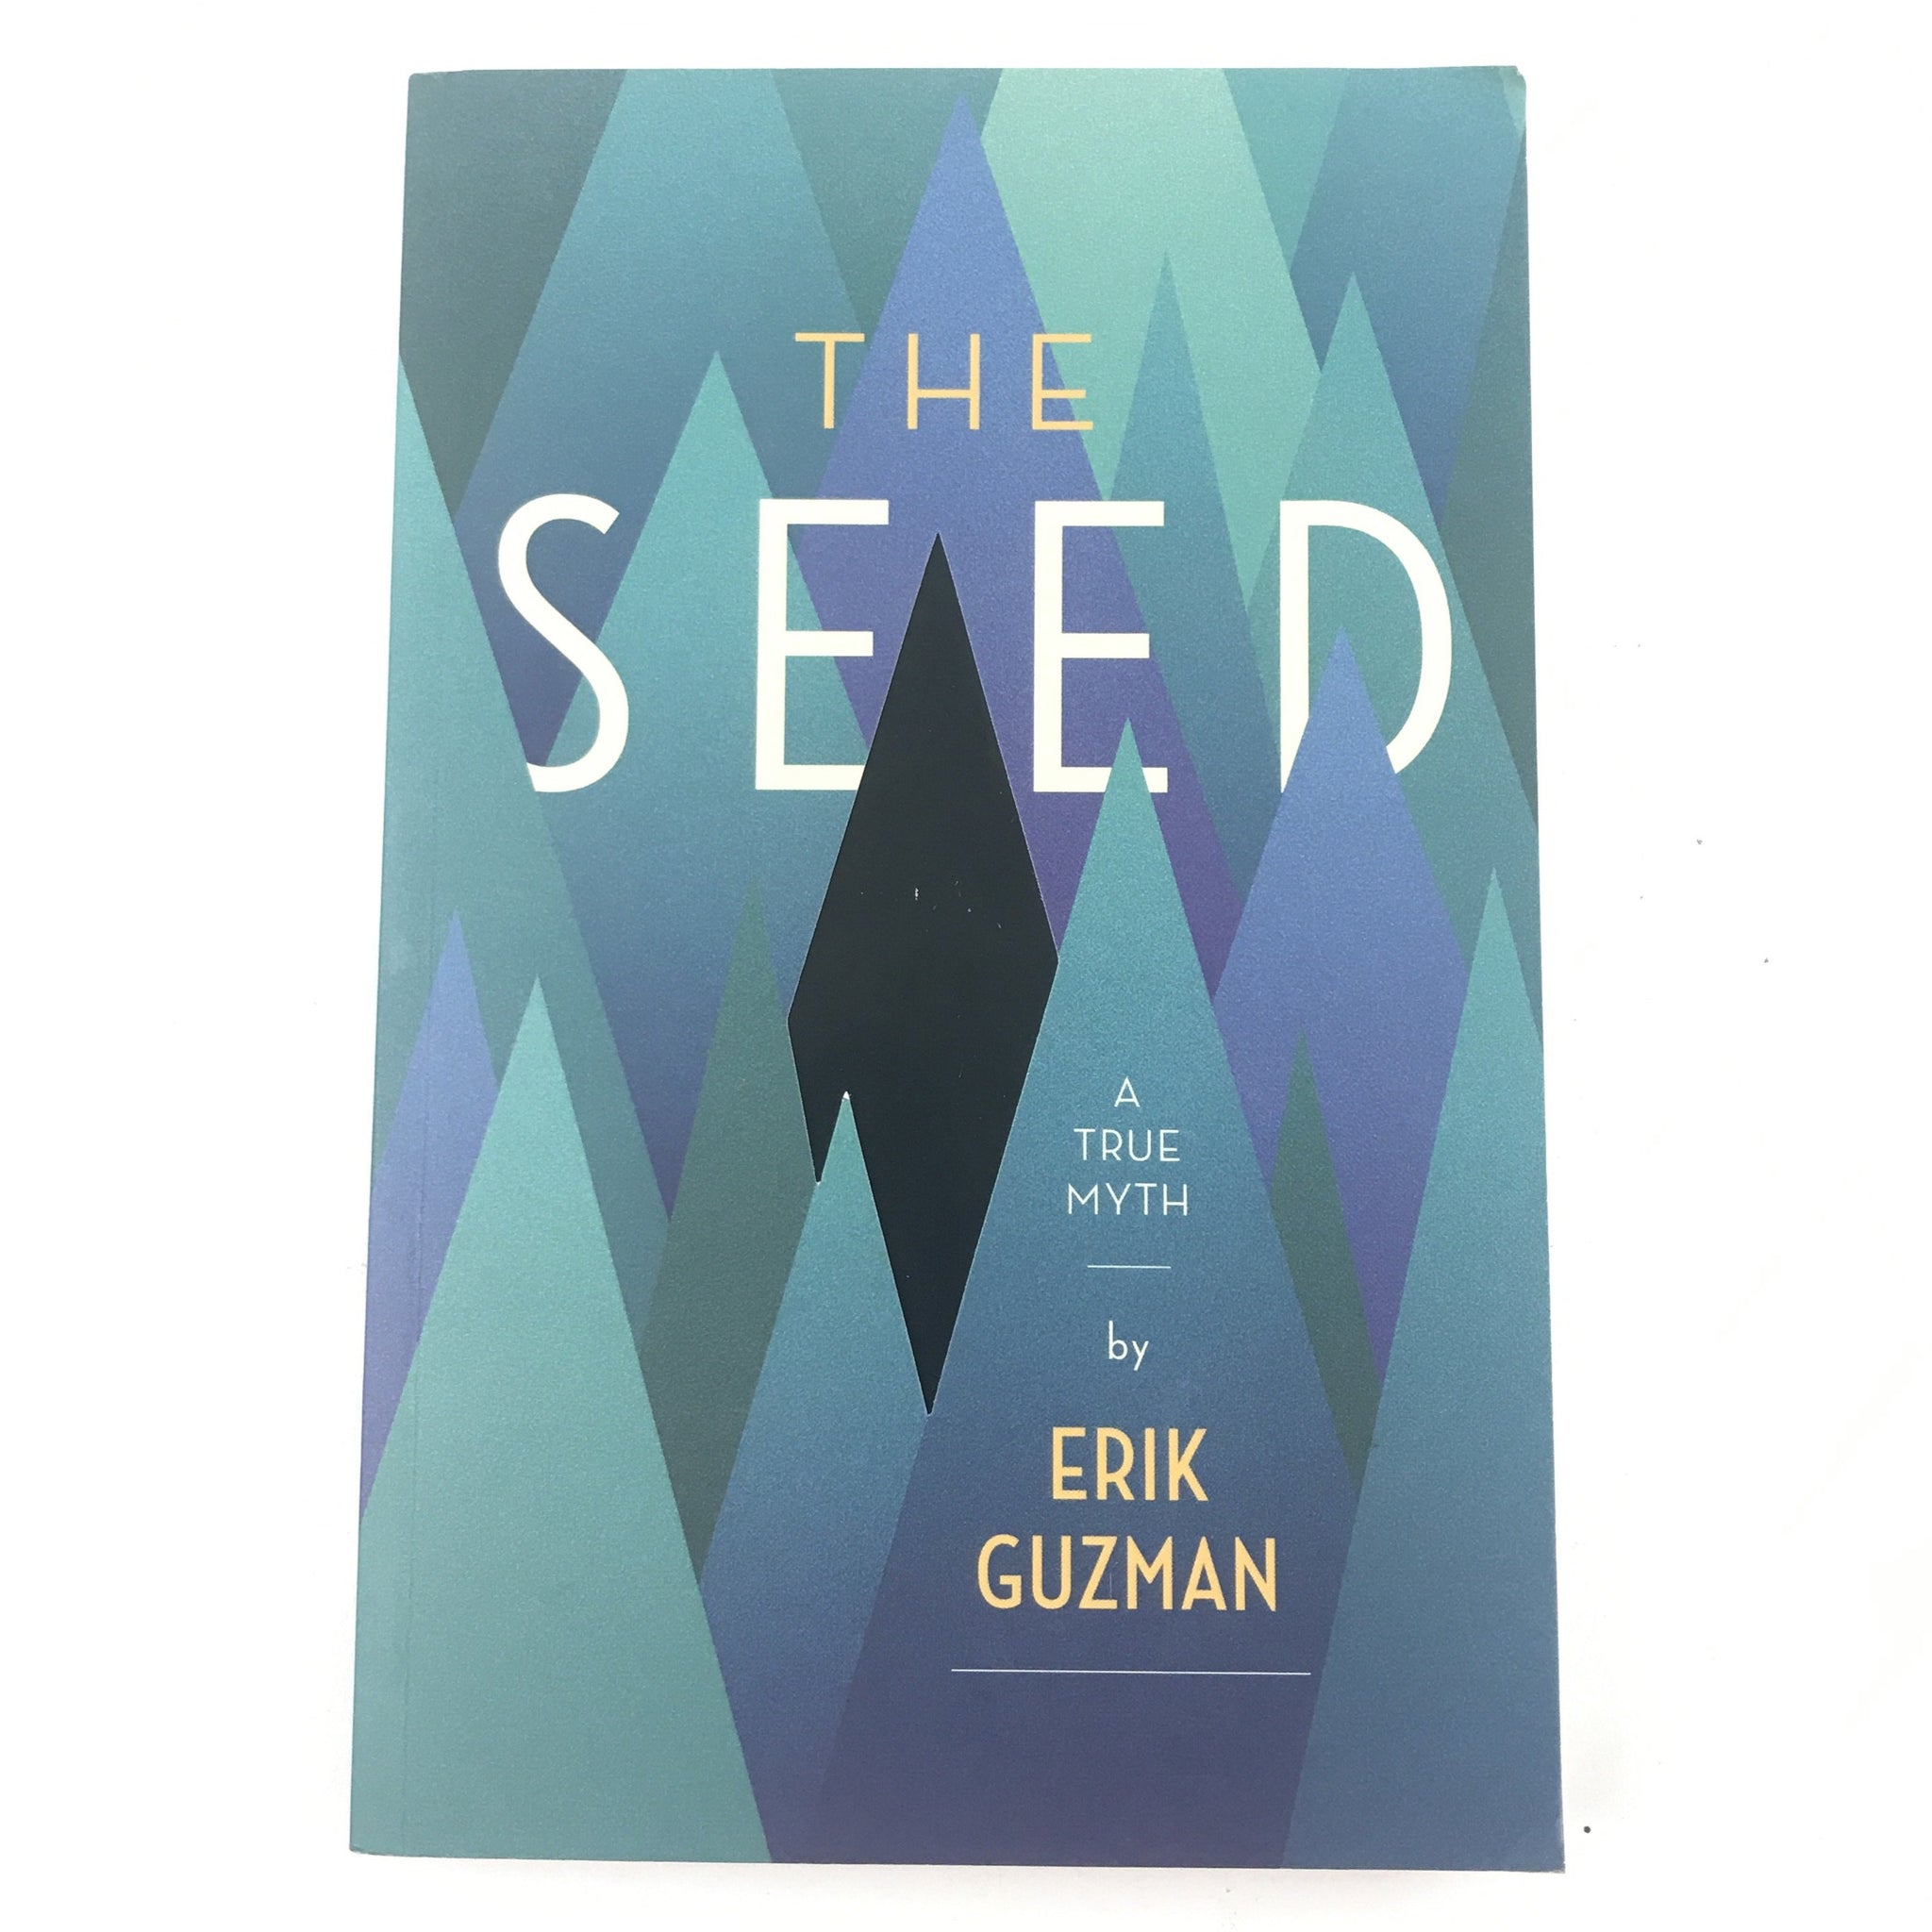 The Seed by Erik Guzman - A True Myth